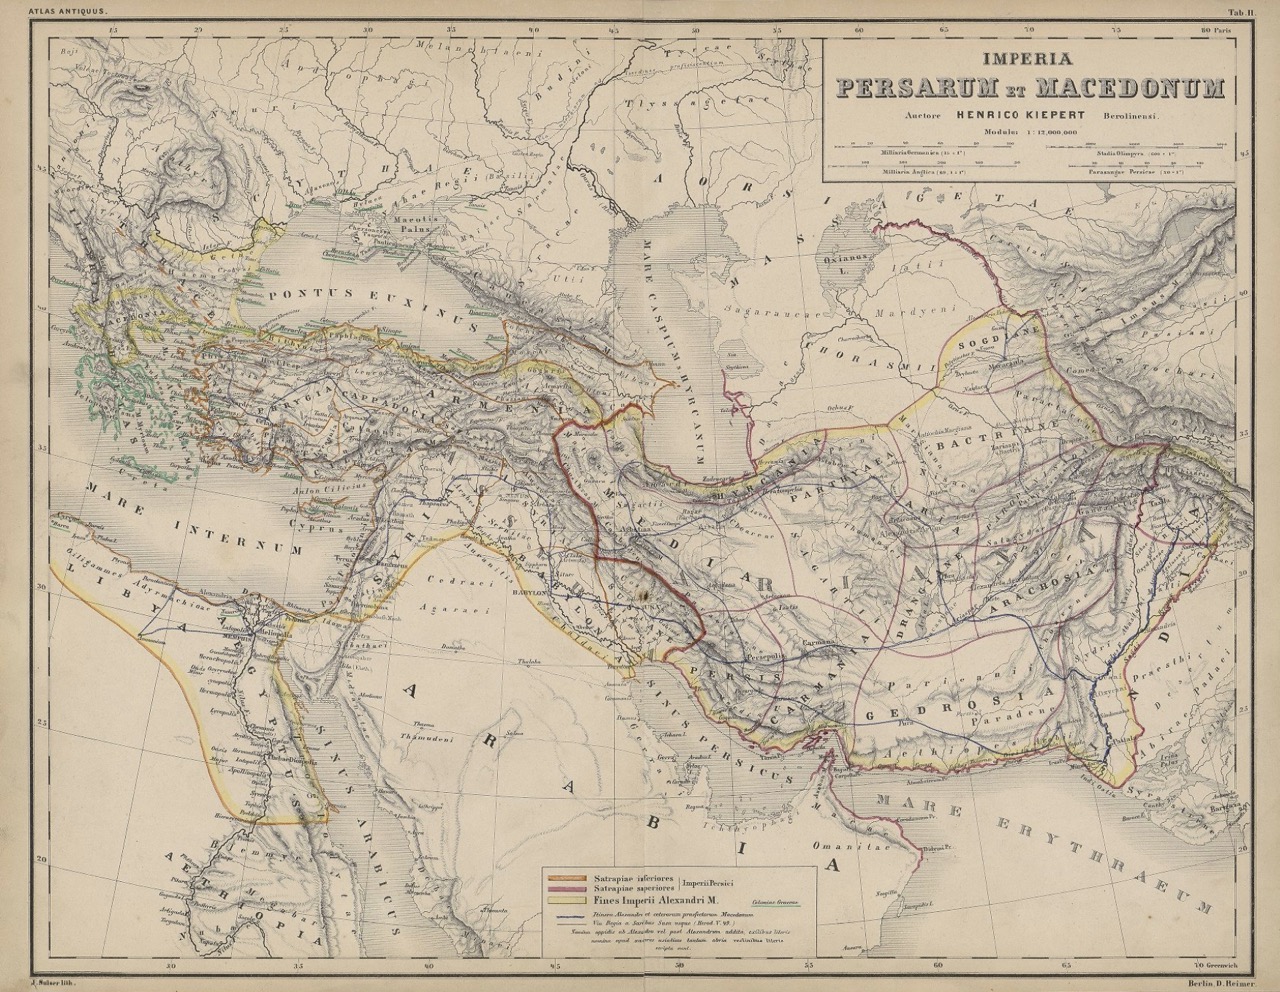 Kiepert: Atlas Antiquus 1863, "Imperia Persarum et Macedonum"